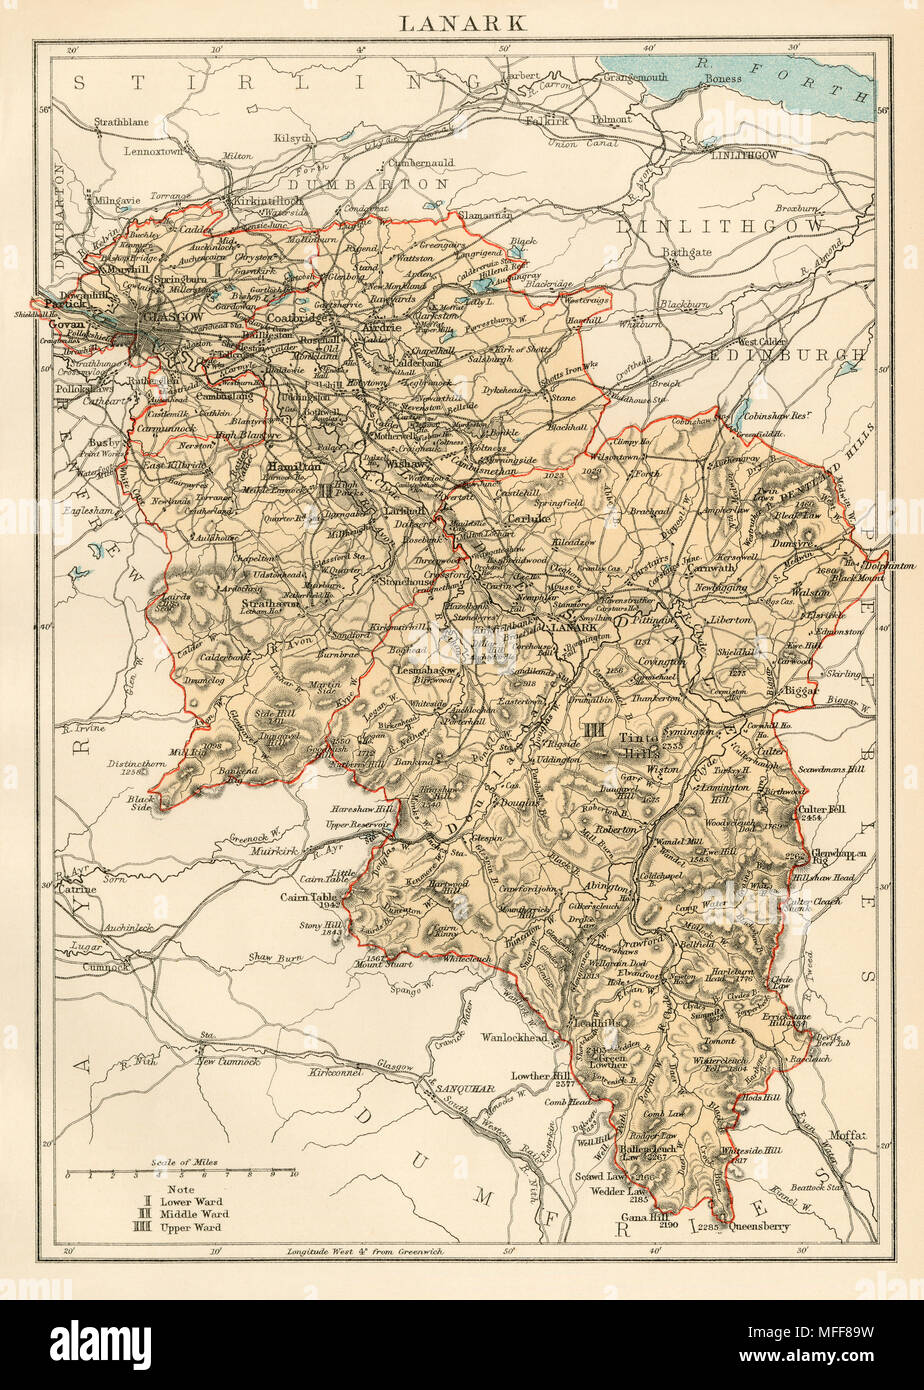 Mappa della contea di Lanark, Scozia, 1870s. Stampa Litografia a colori Foto Stock